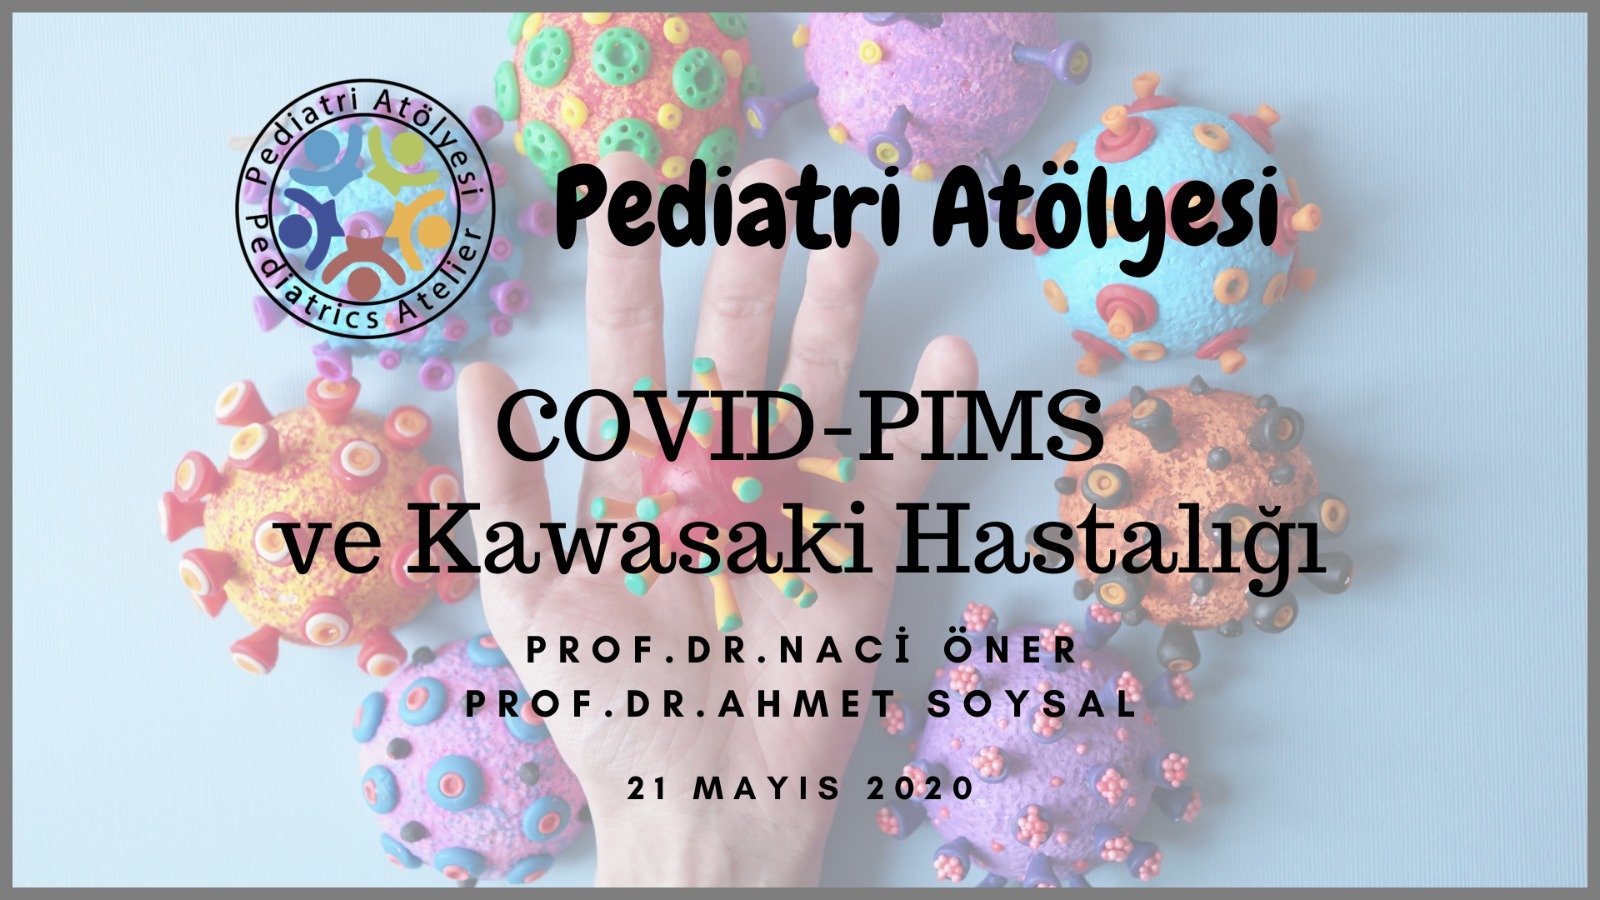 COVID-PIMS ve Kawasaki Hastalığı